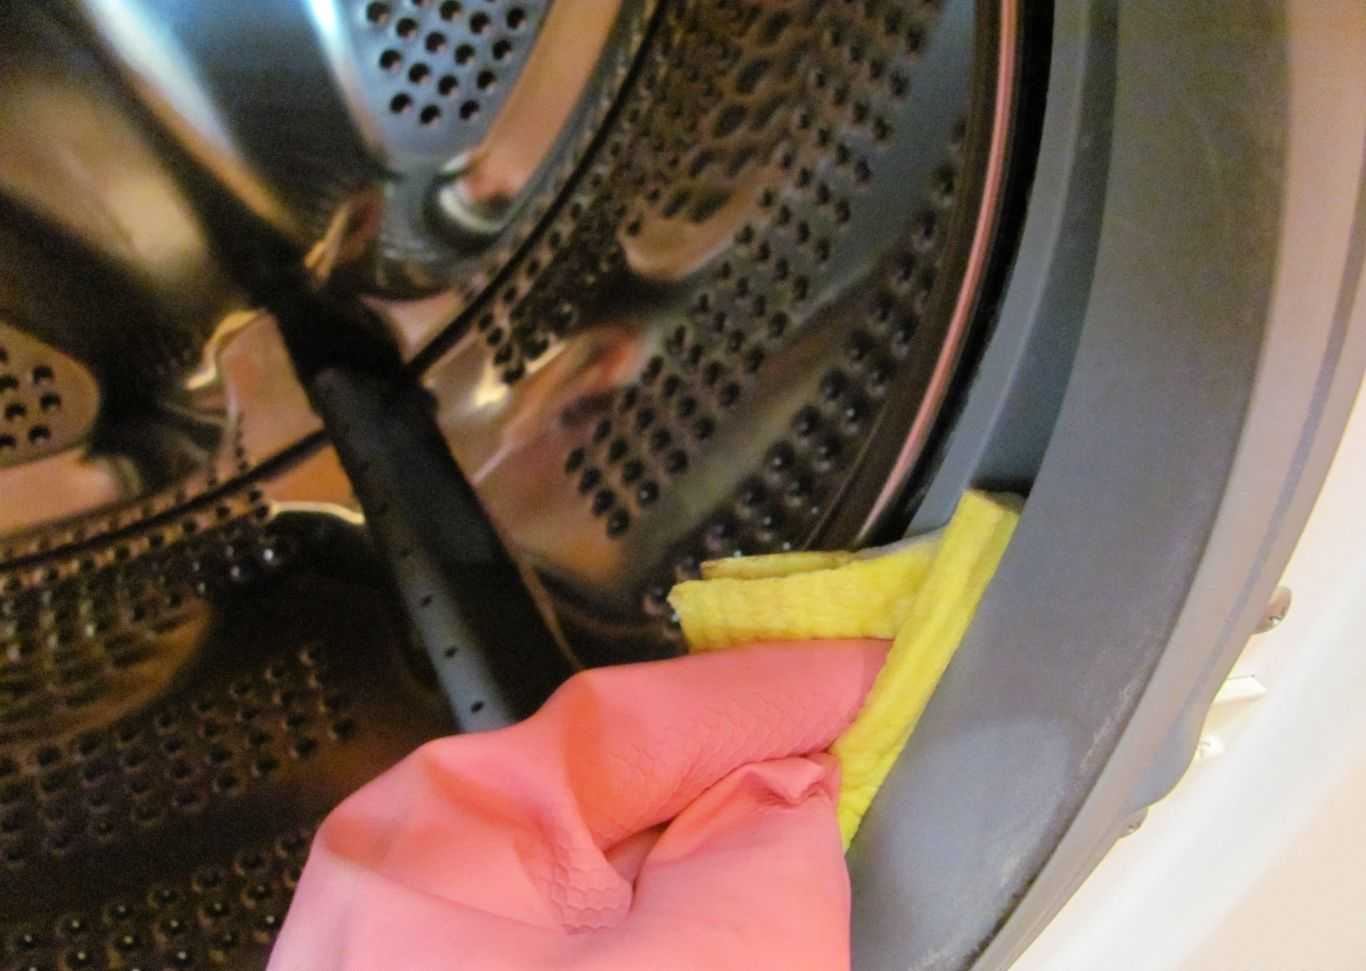 Как избавиться от плесени в стиральной машине: лучшие средства и способы